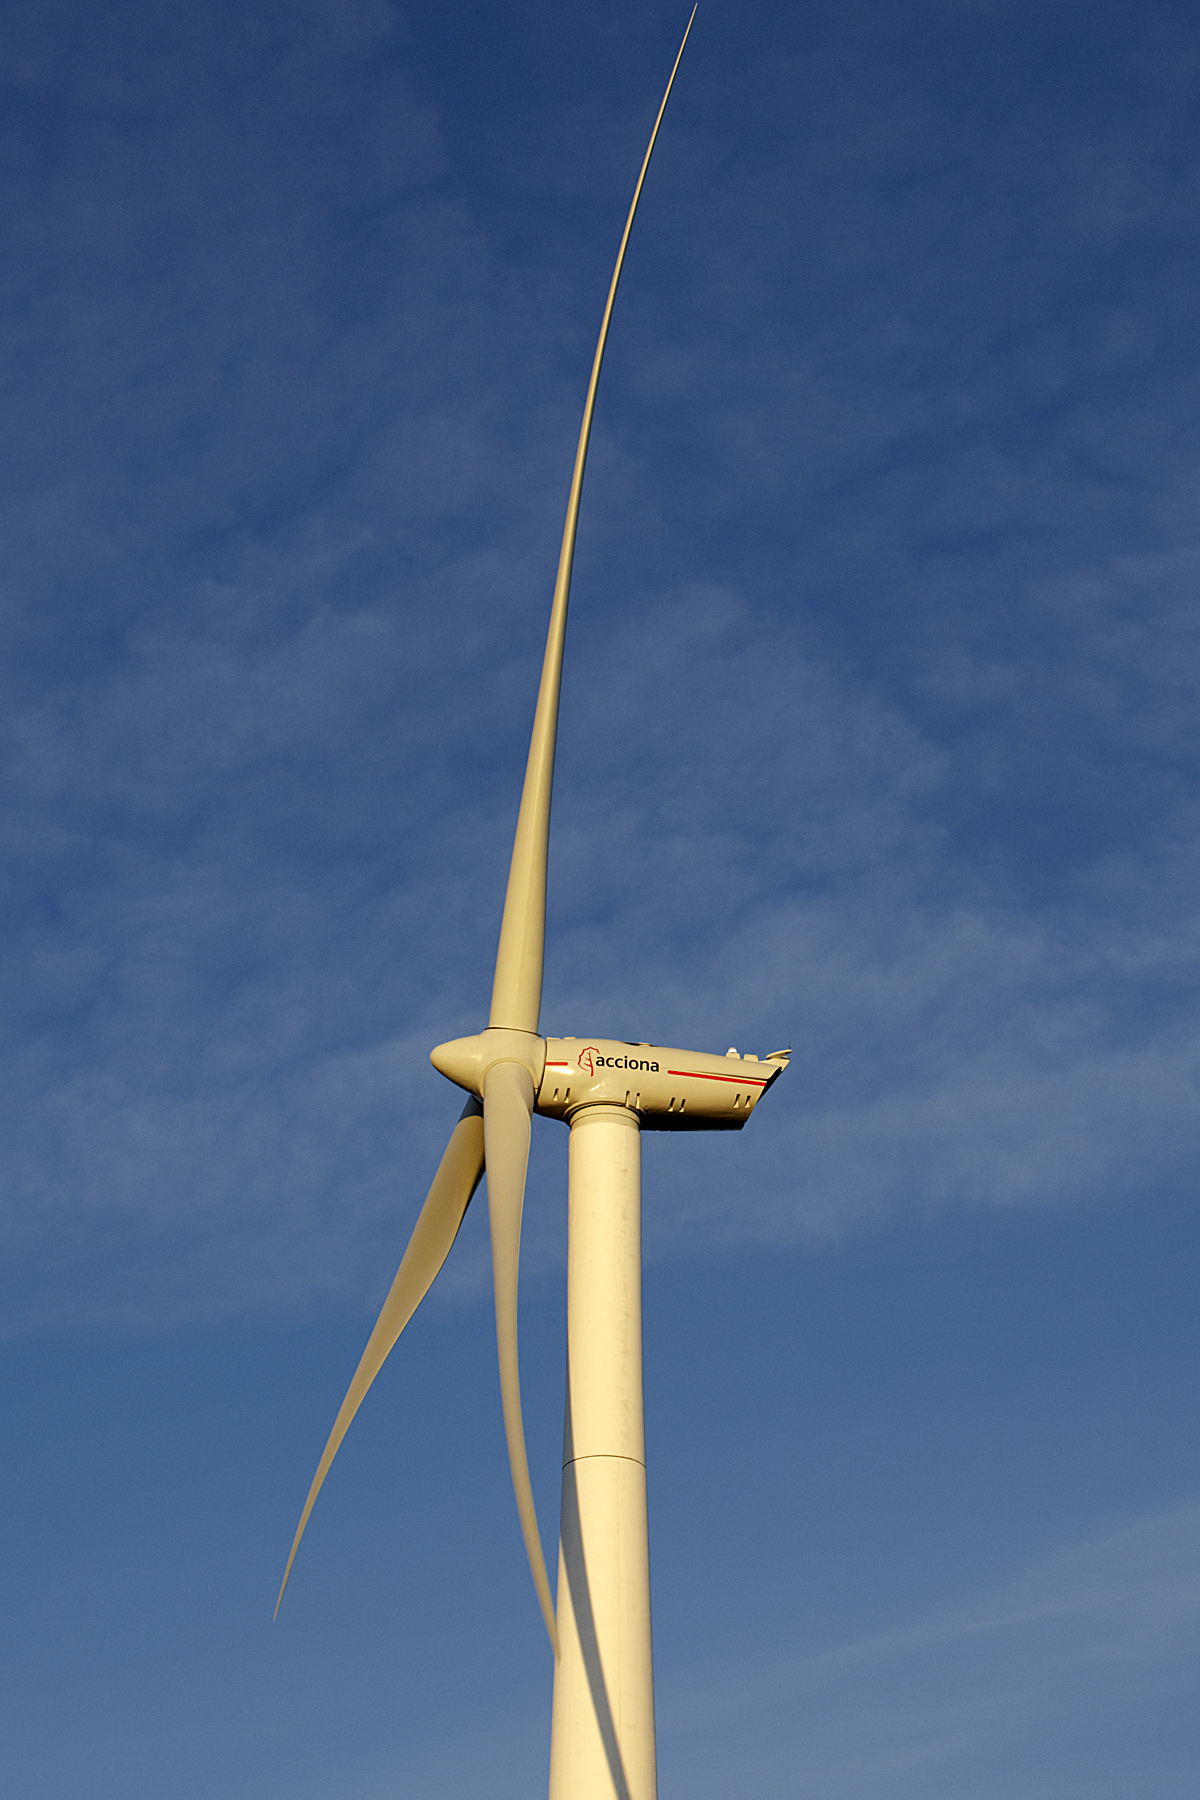 Eólica y energías renovables: Acciona Windpower obtiene la acreditación que le permite vender aerogeneradores en Brasil